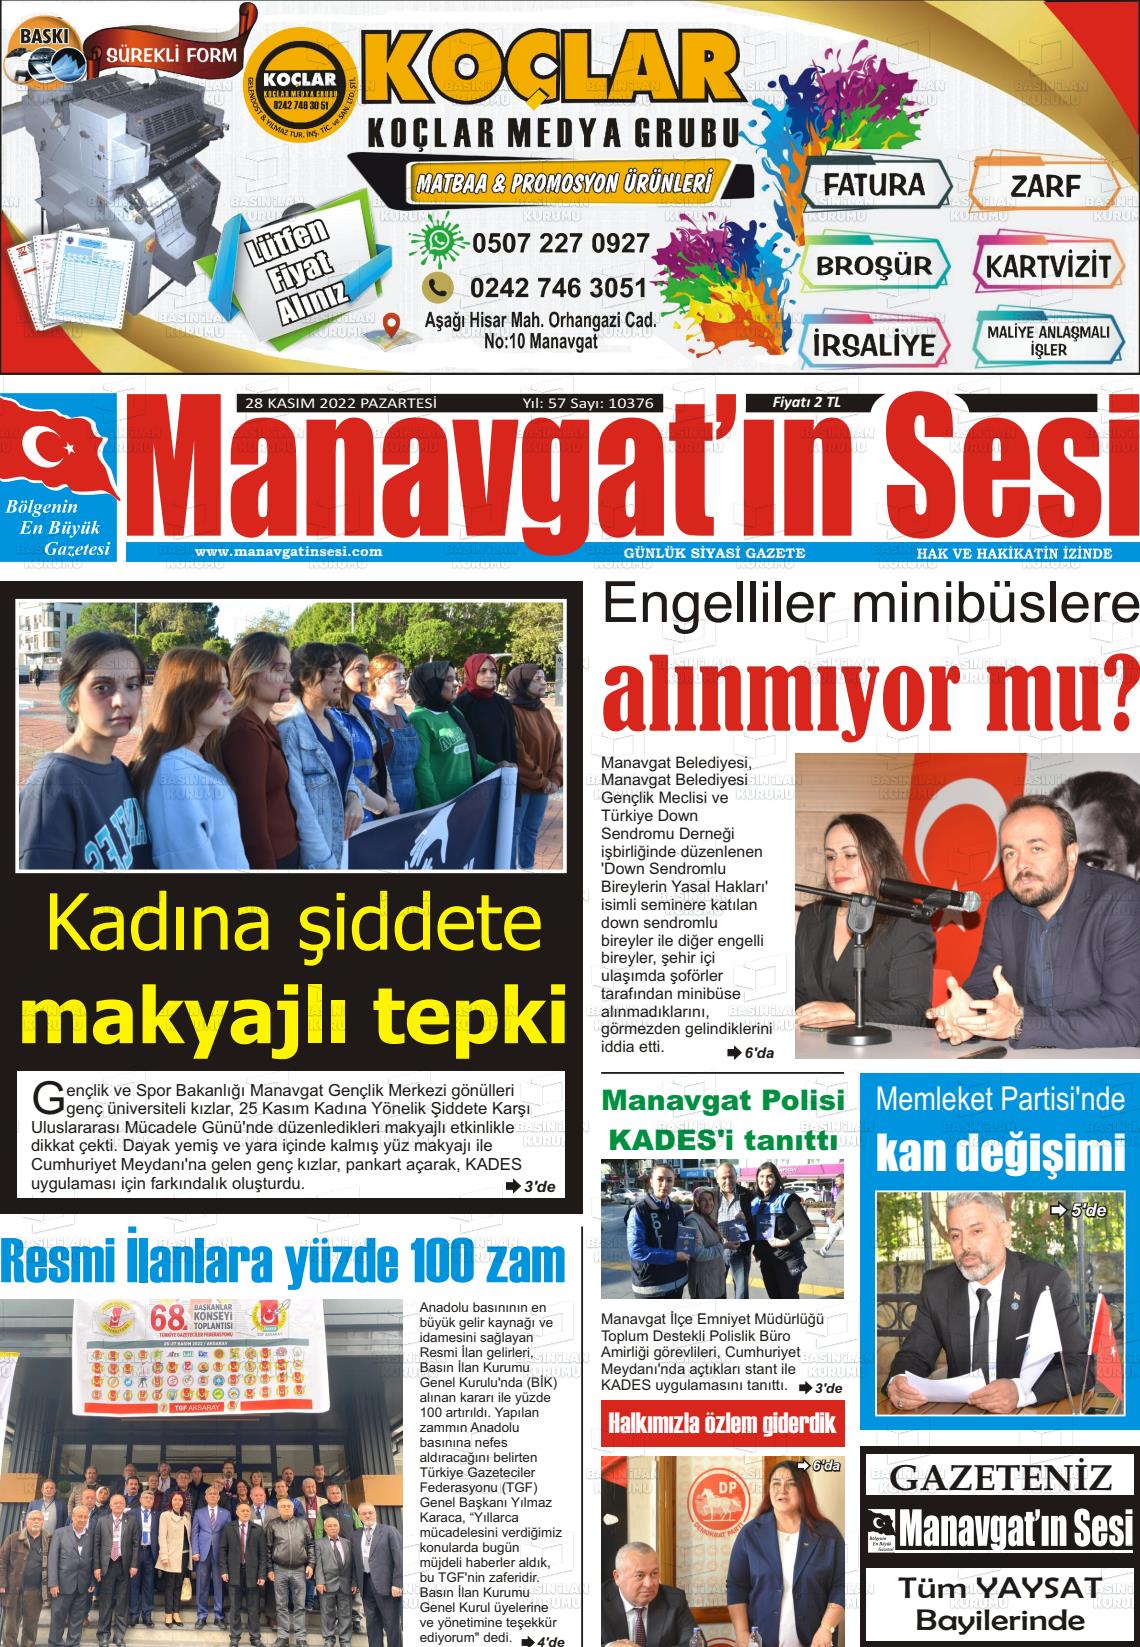 28 Kasım 2022 Manavgat'ın Sesi Gazete Manşeti